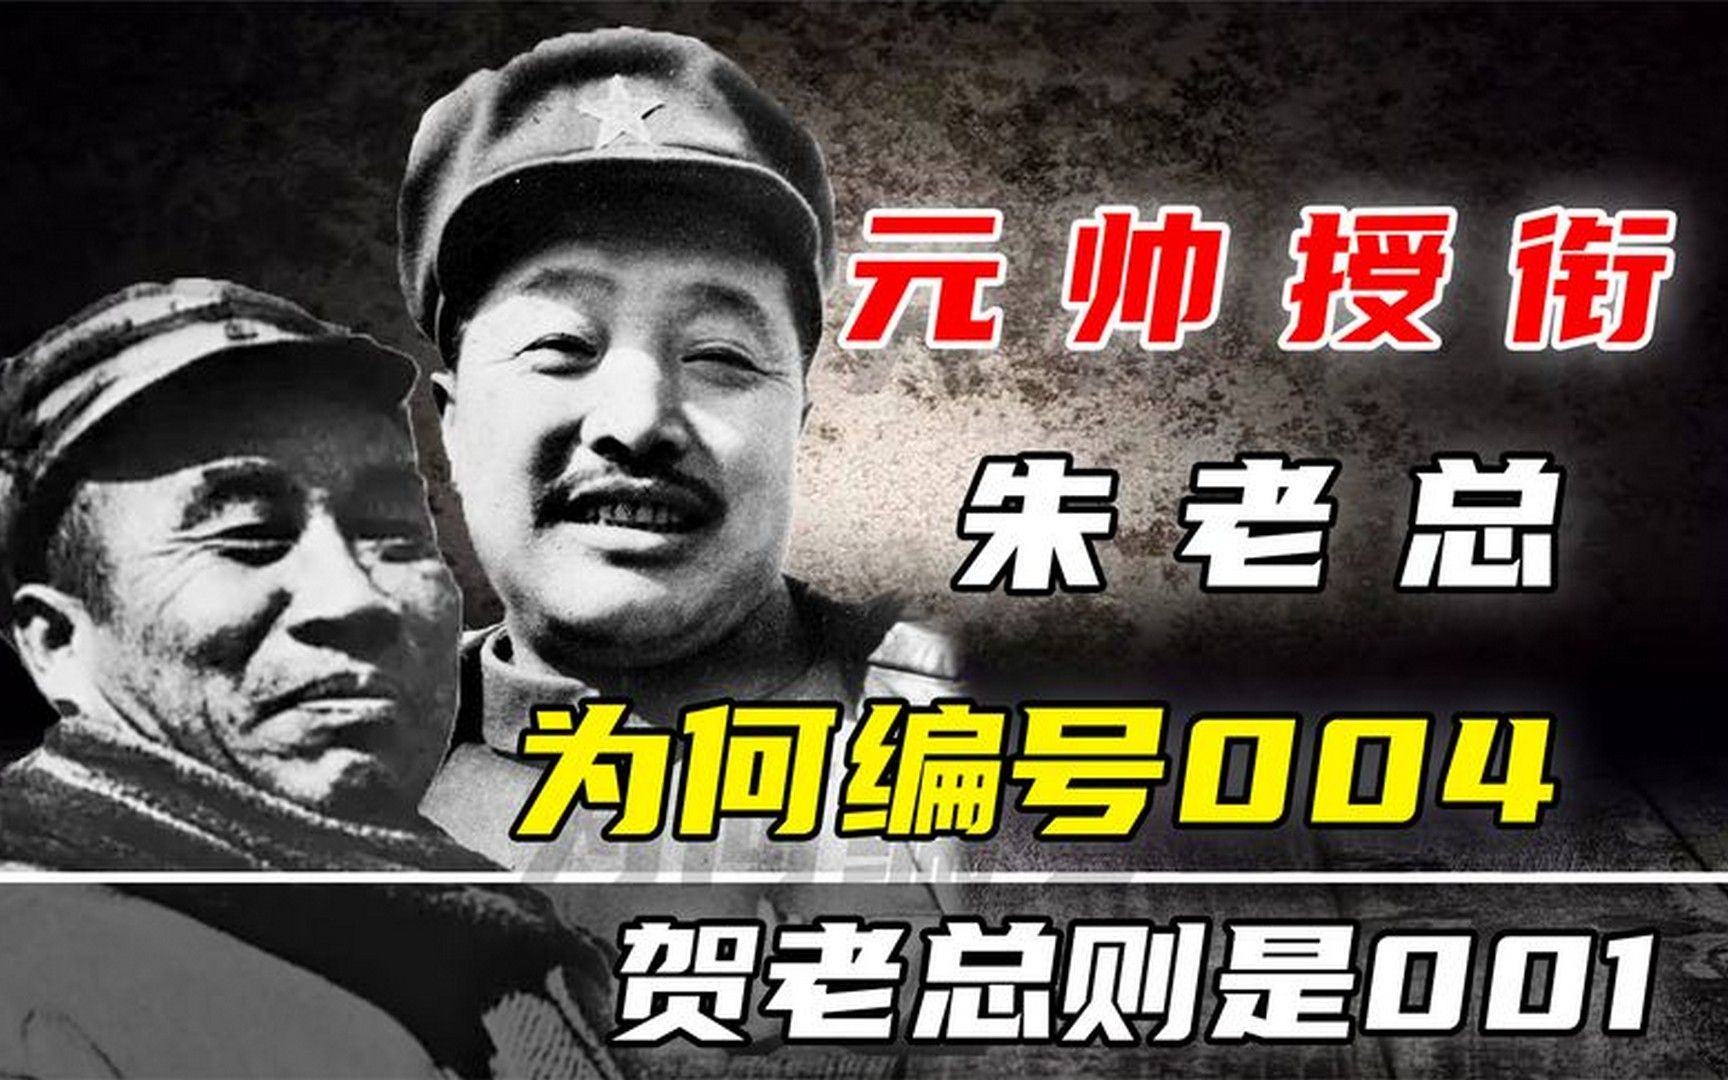 1955年新中国元帅授衔,朱老总为何编号004,而第五的贺老总是001